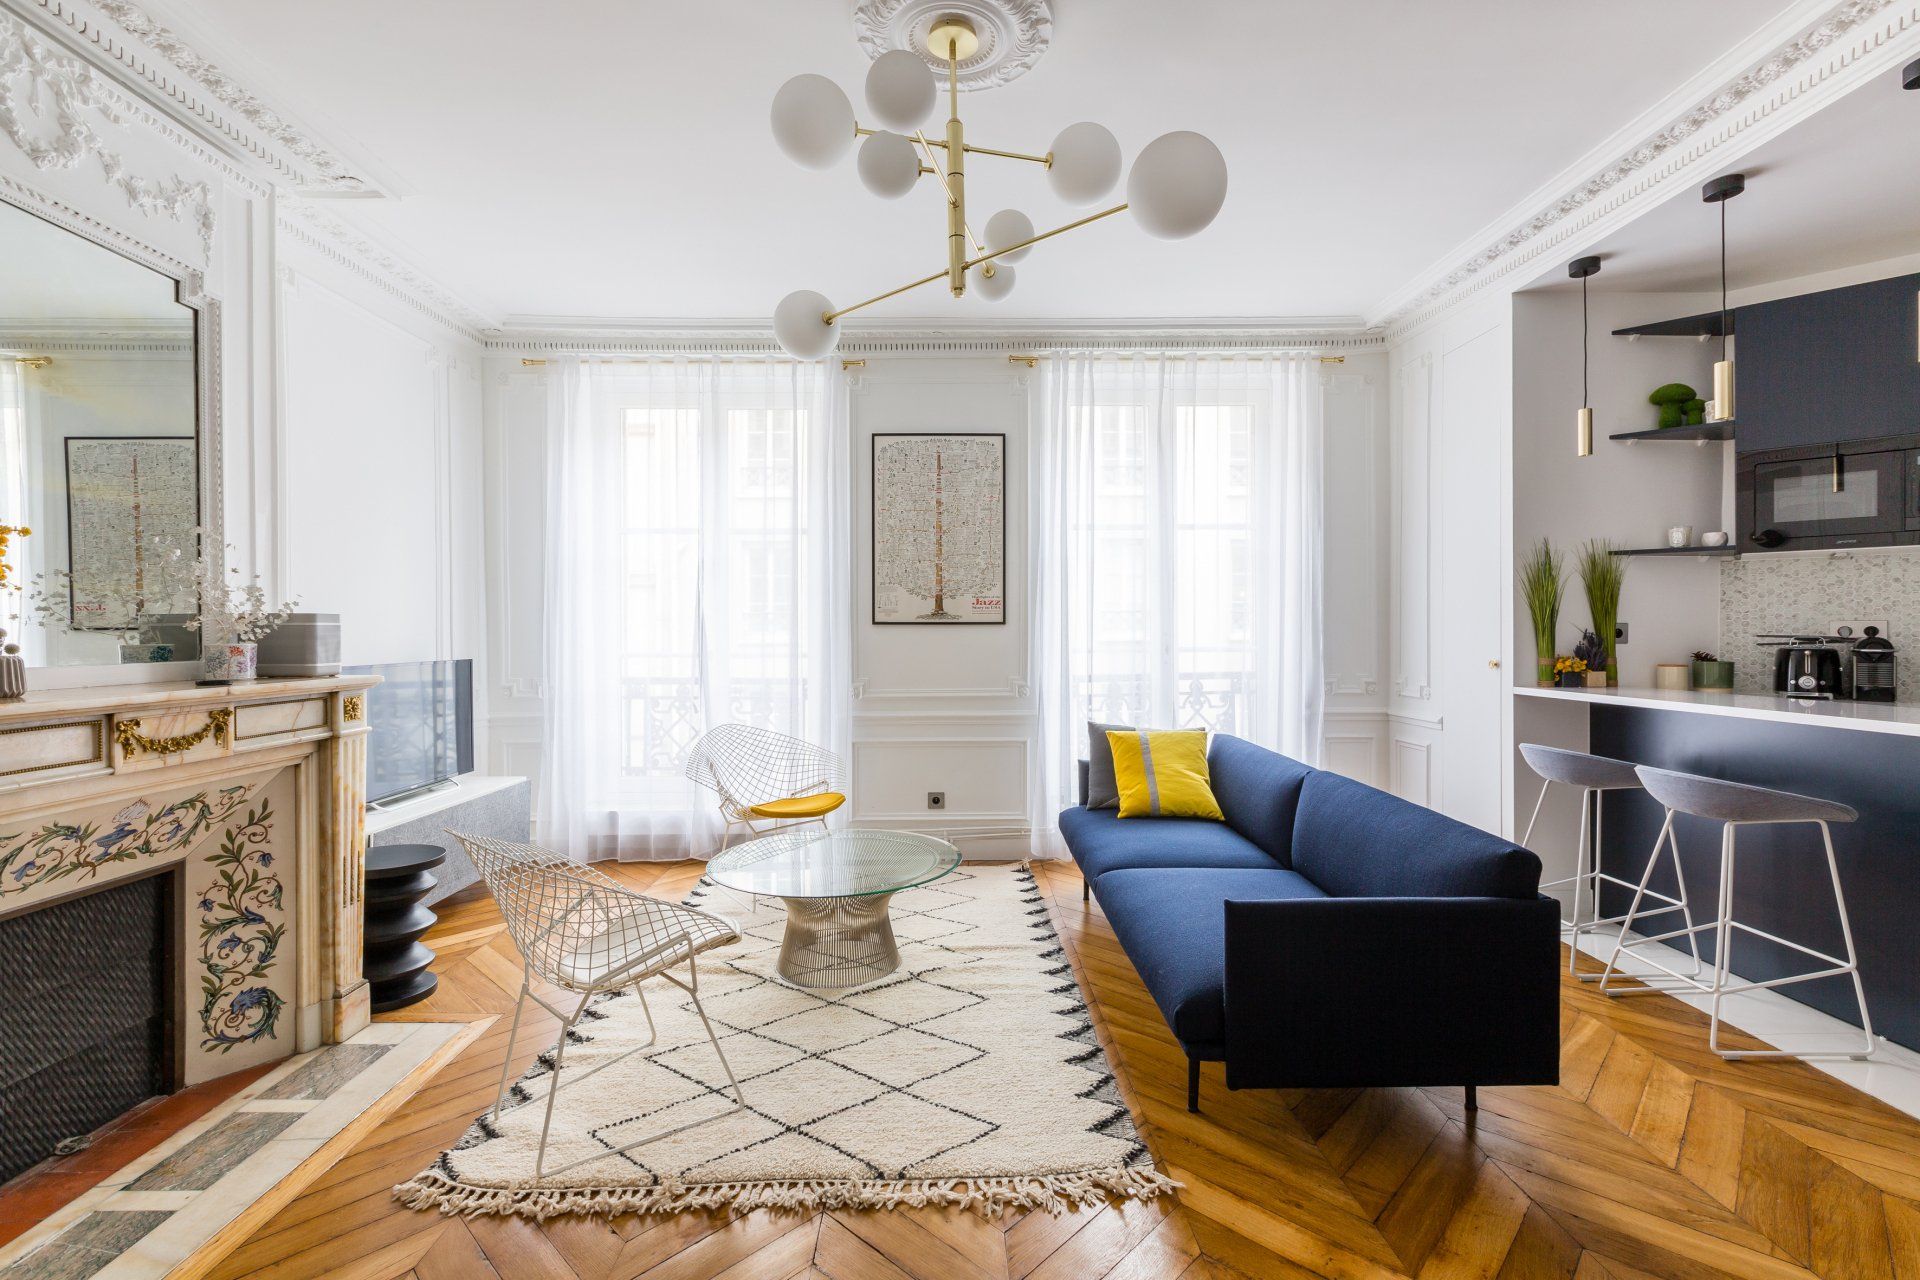 AXIOME Interior Design, architecte d'intérieur Paris, appartement haussmannien Paris 9ème, séjour cuisine bleue